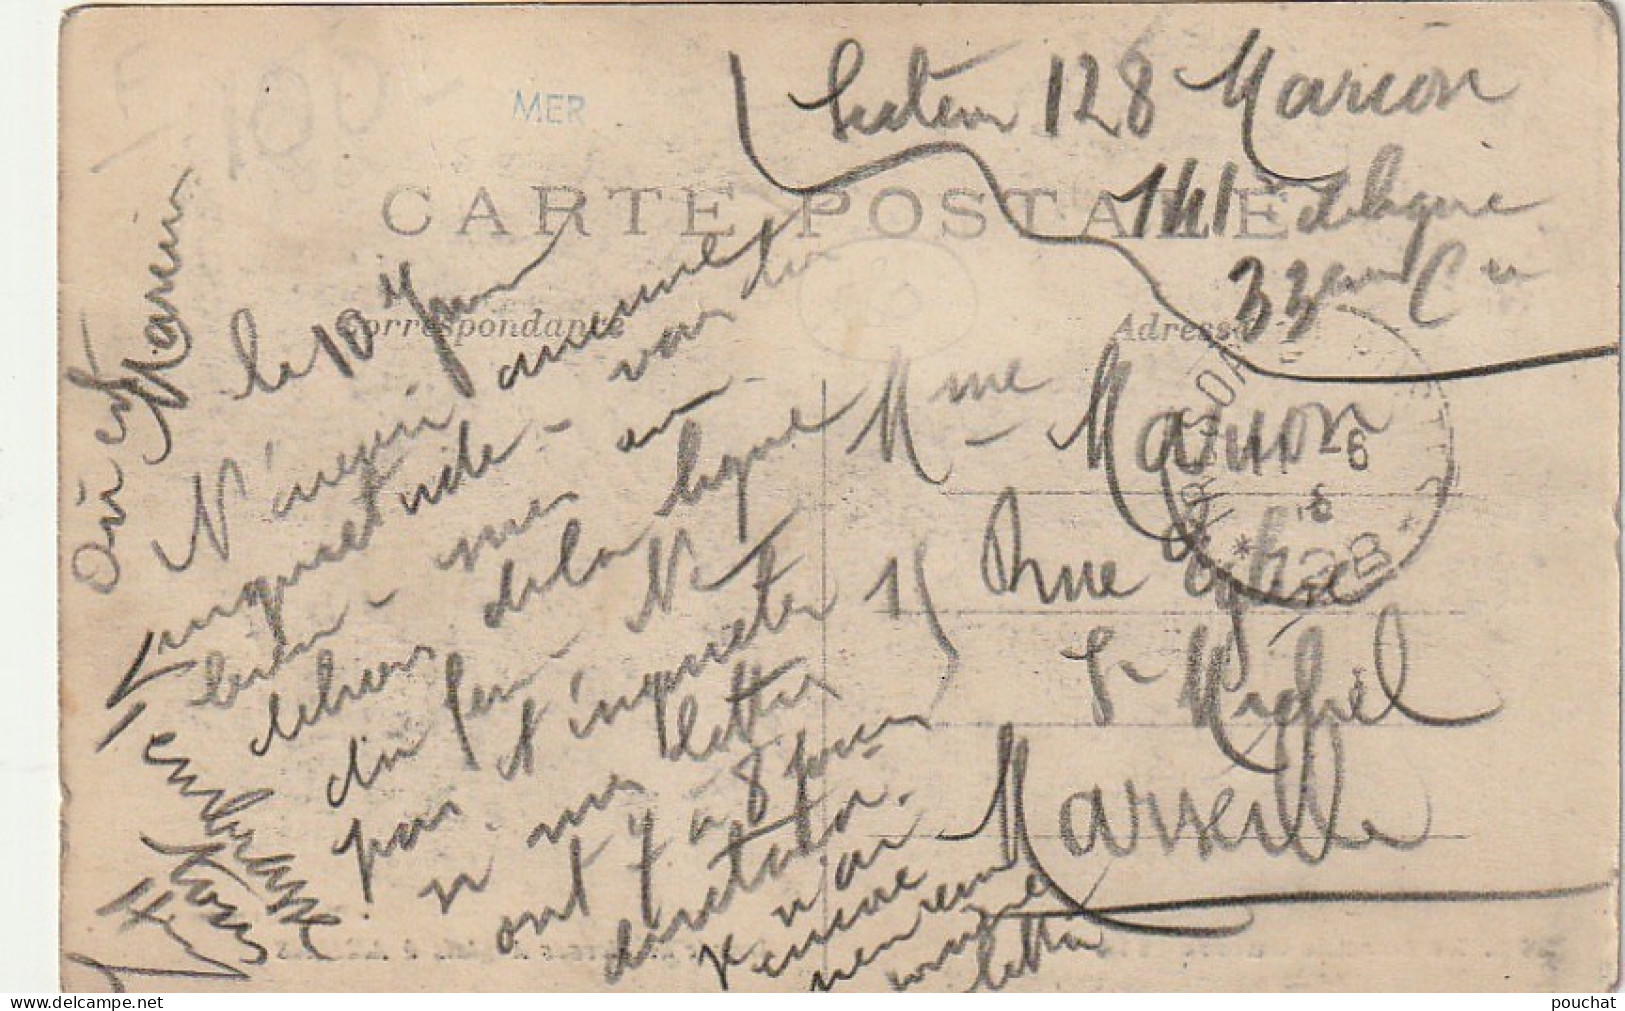 AA+ 107-(80) GUERRE 1914 - ARRIVEE DES BLESSES ANGLAIS A AMIENS - Amiens